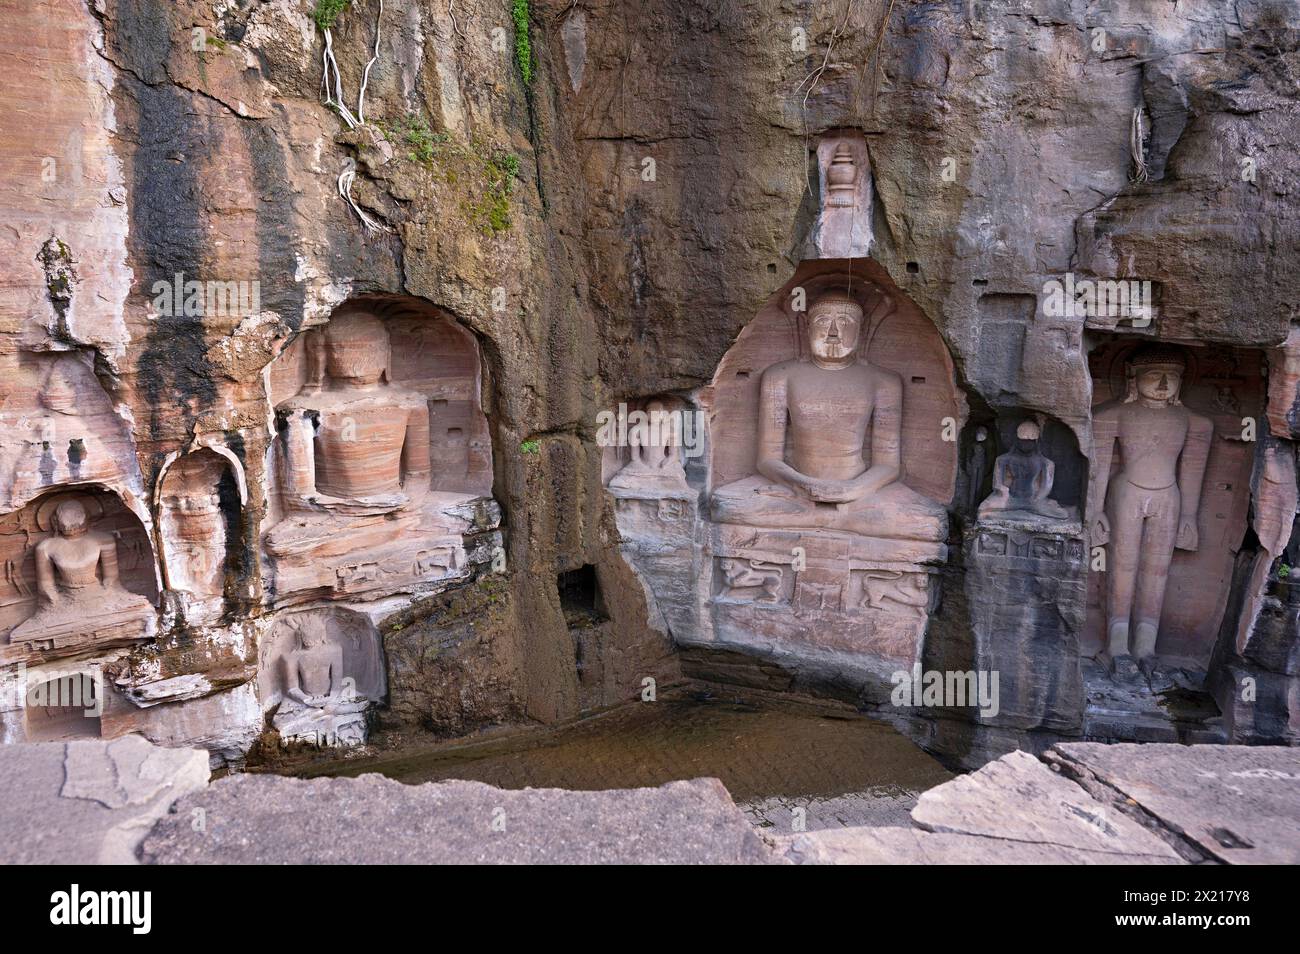 Sculptures Jain sculptées le long des deux parois rocheuses de la vallée, populairement connu sous le nom de Rock - Cut Jain images Urwai Gate ou Siddhanchal groupe de grottes, Fo Banque D'Images